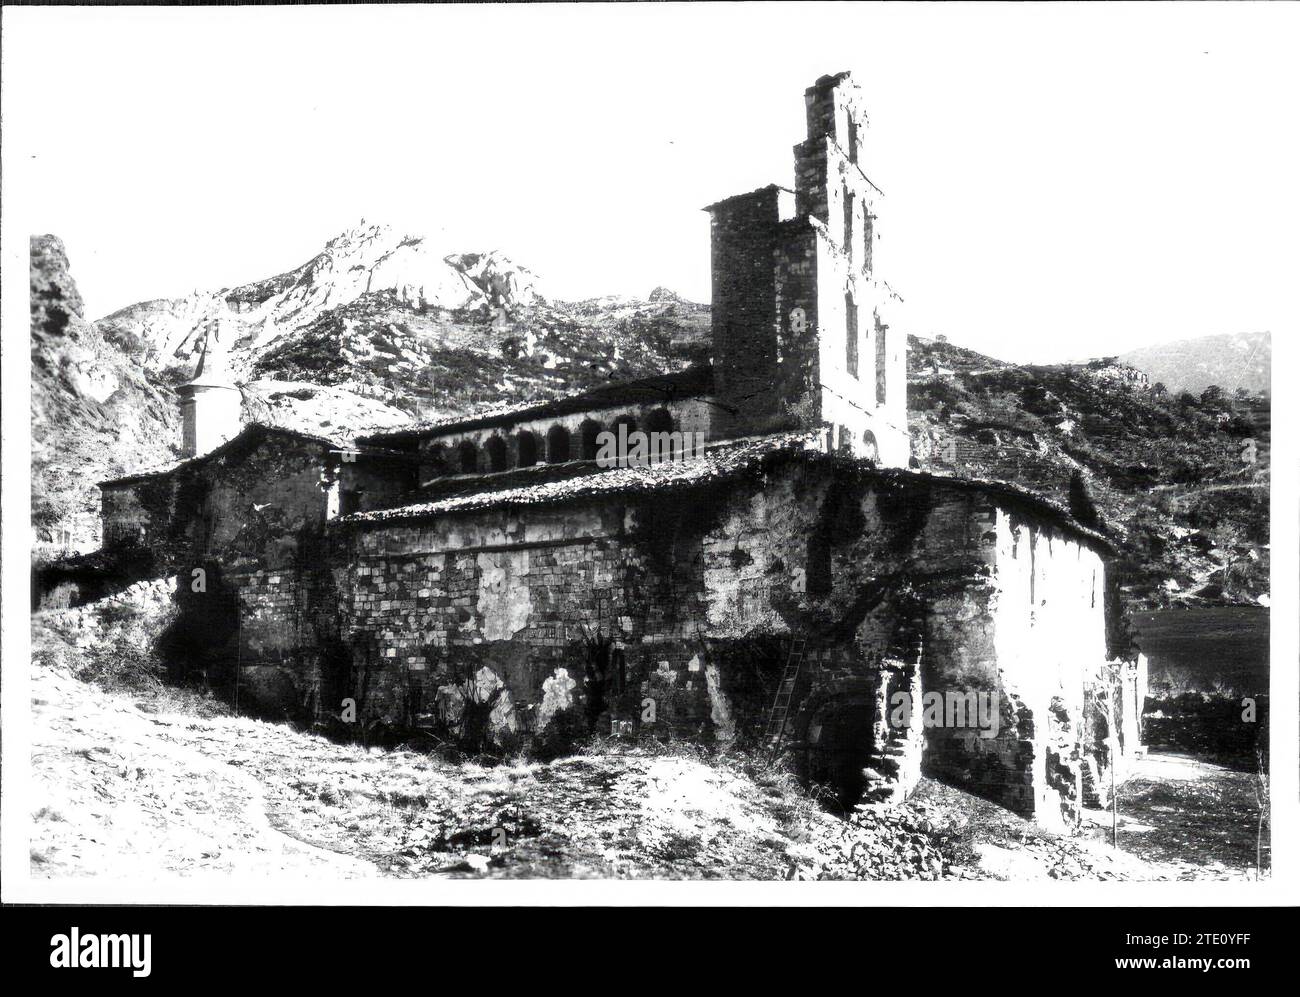 12/31/1949. Die Kirche von Gerri de la Sal wurde nach acht Jahrhunderten wieder eingeweiht. Quelle: Album/Archivo ABC Stockfoto